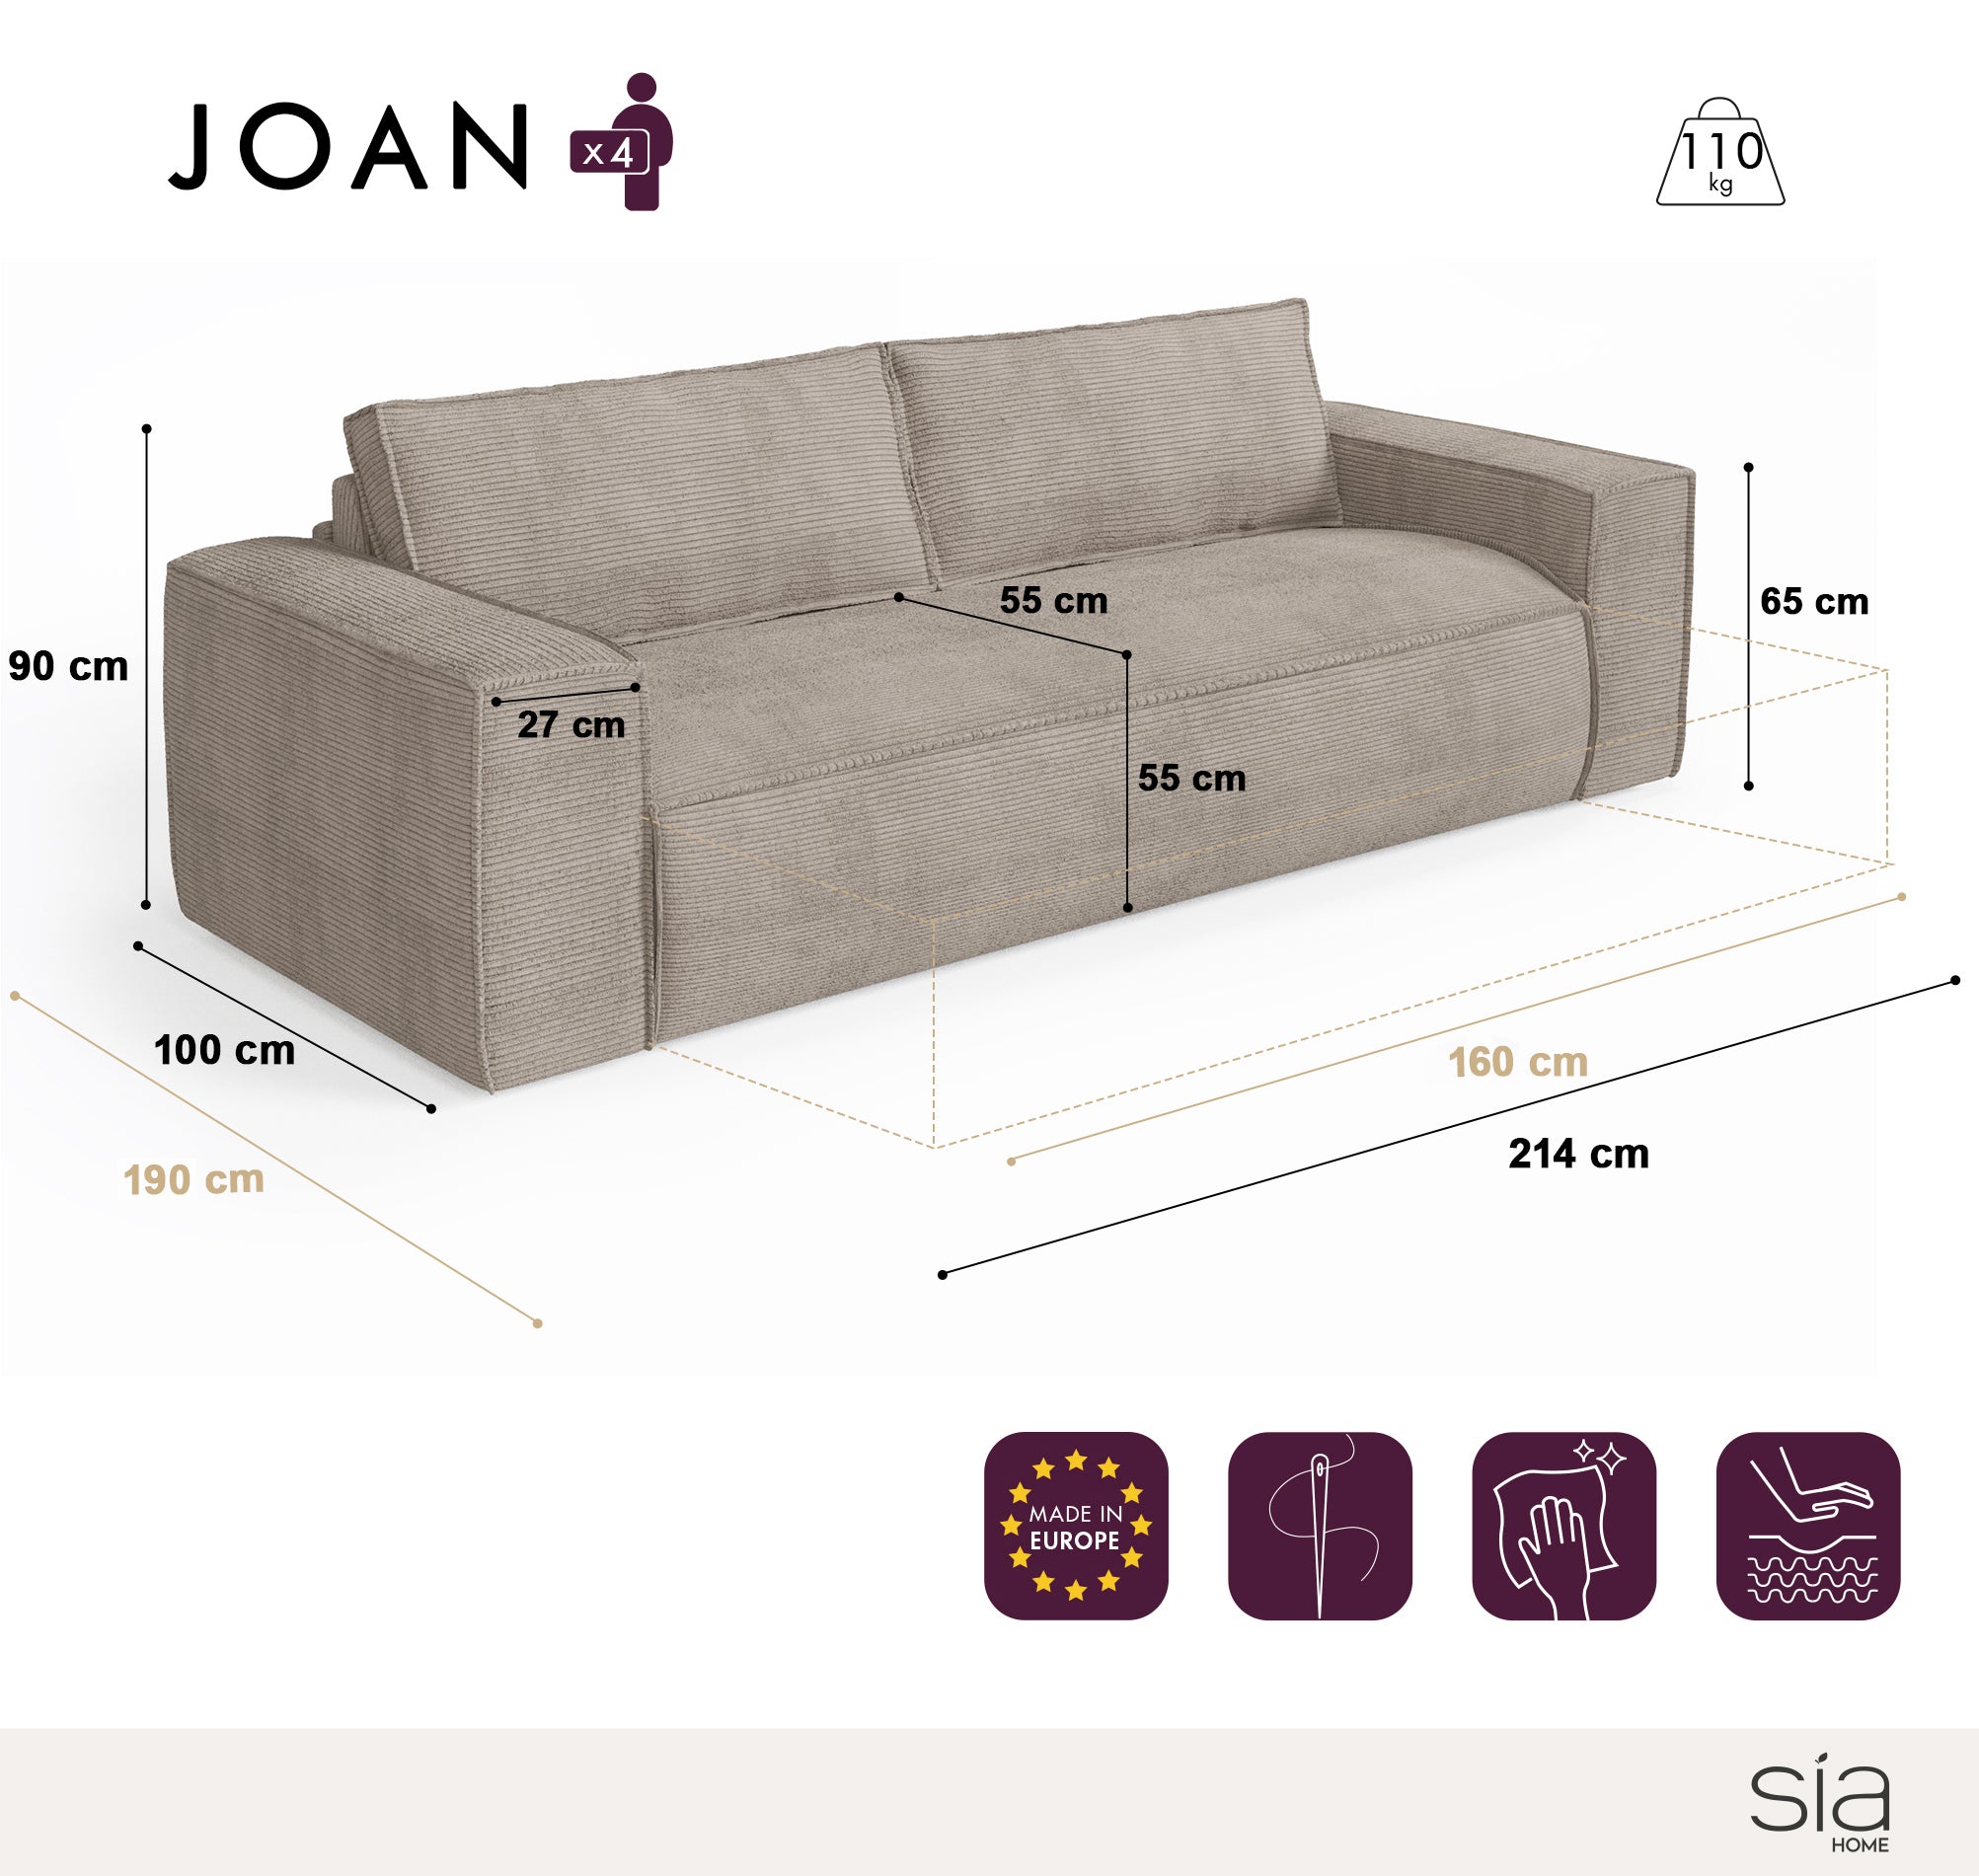 Canapé Convertible Joan